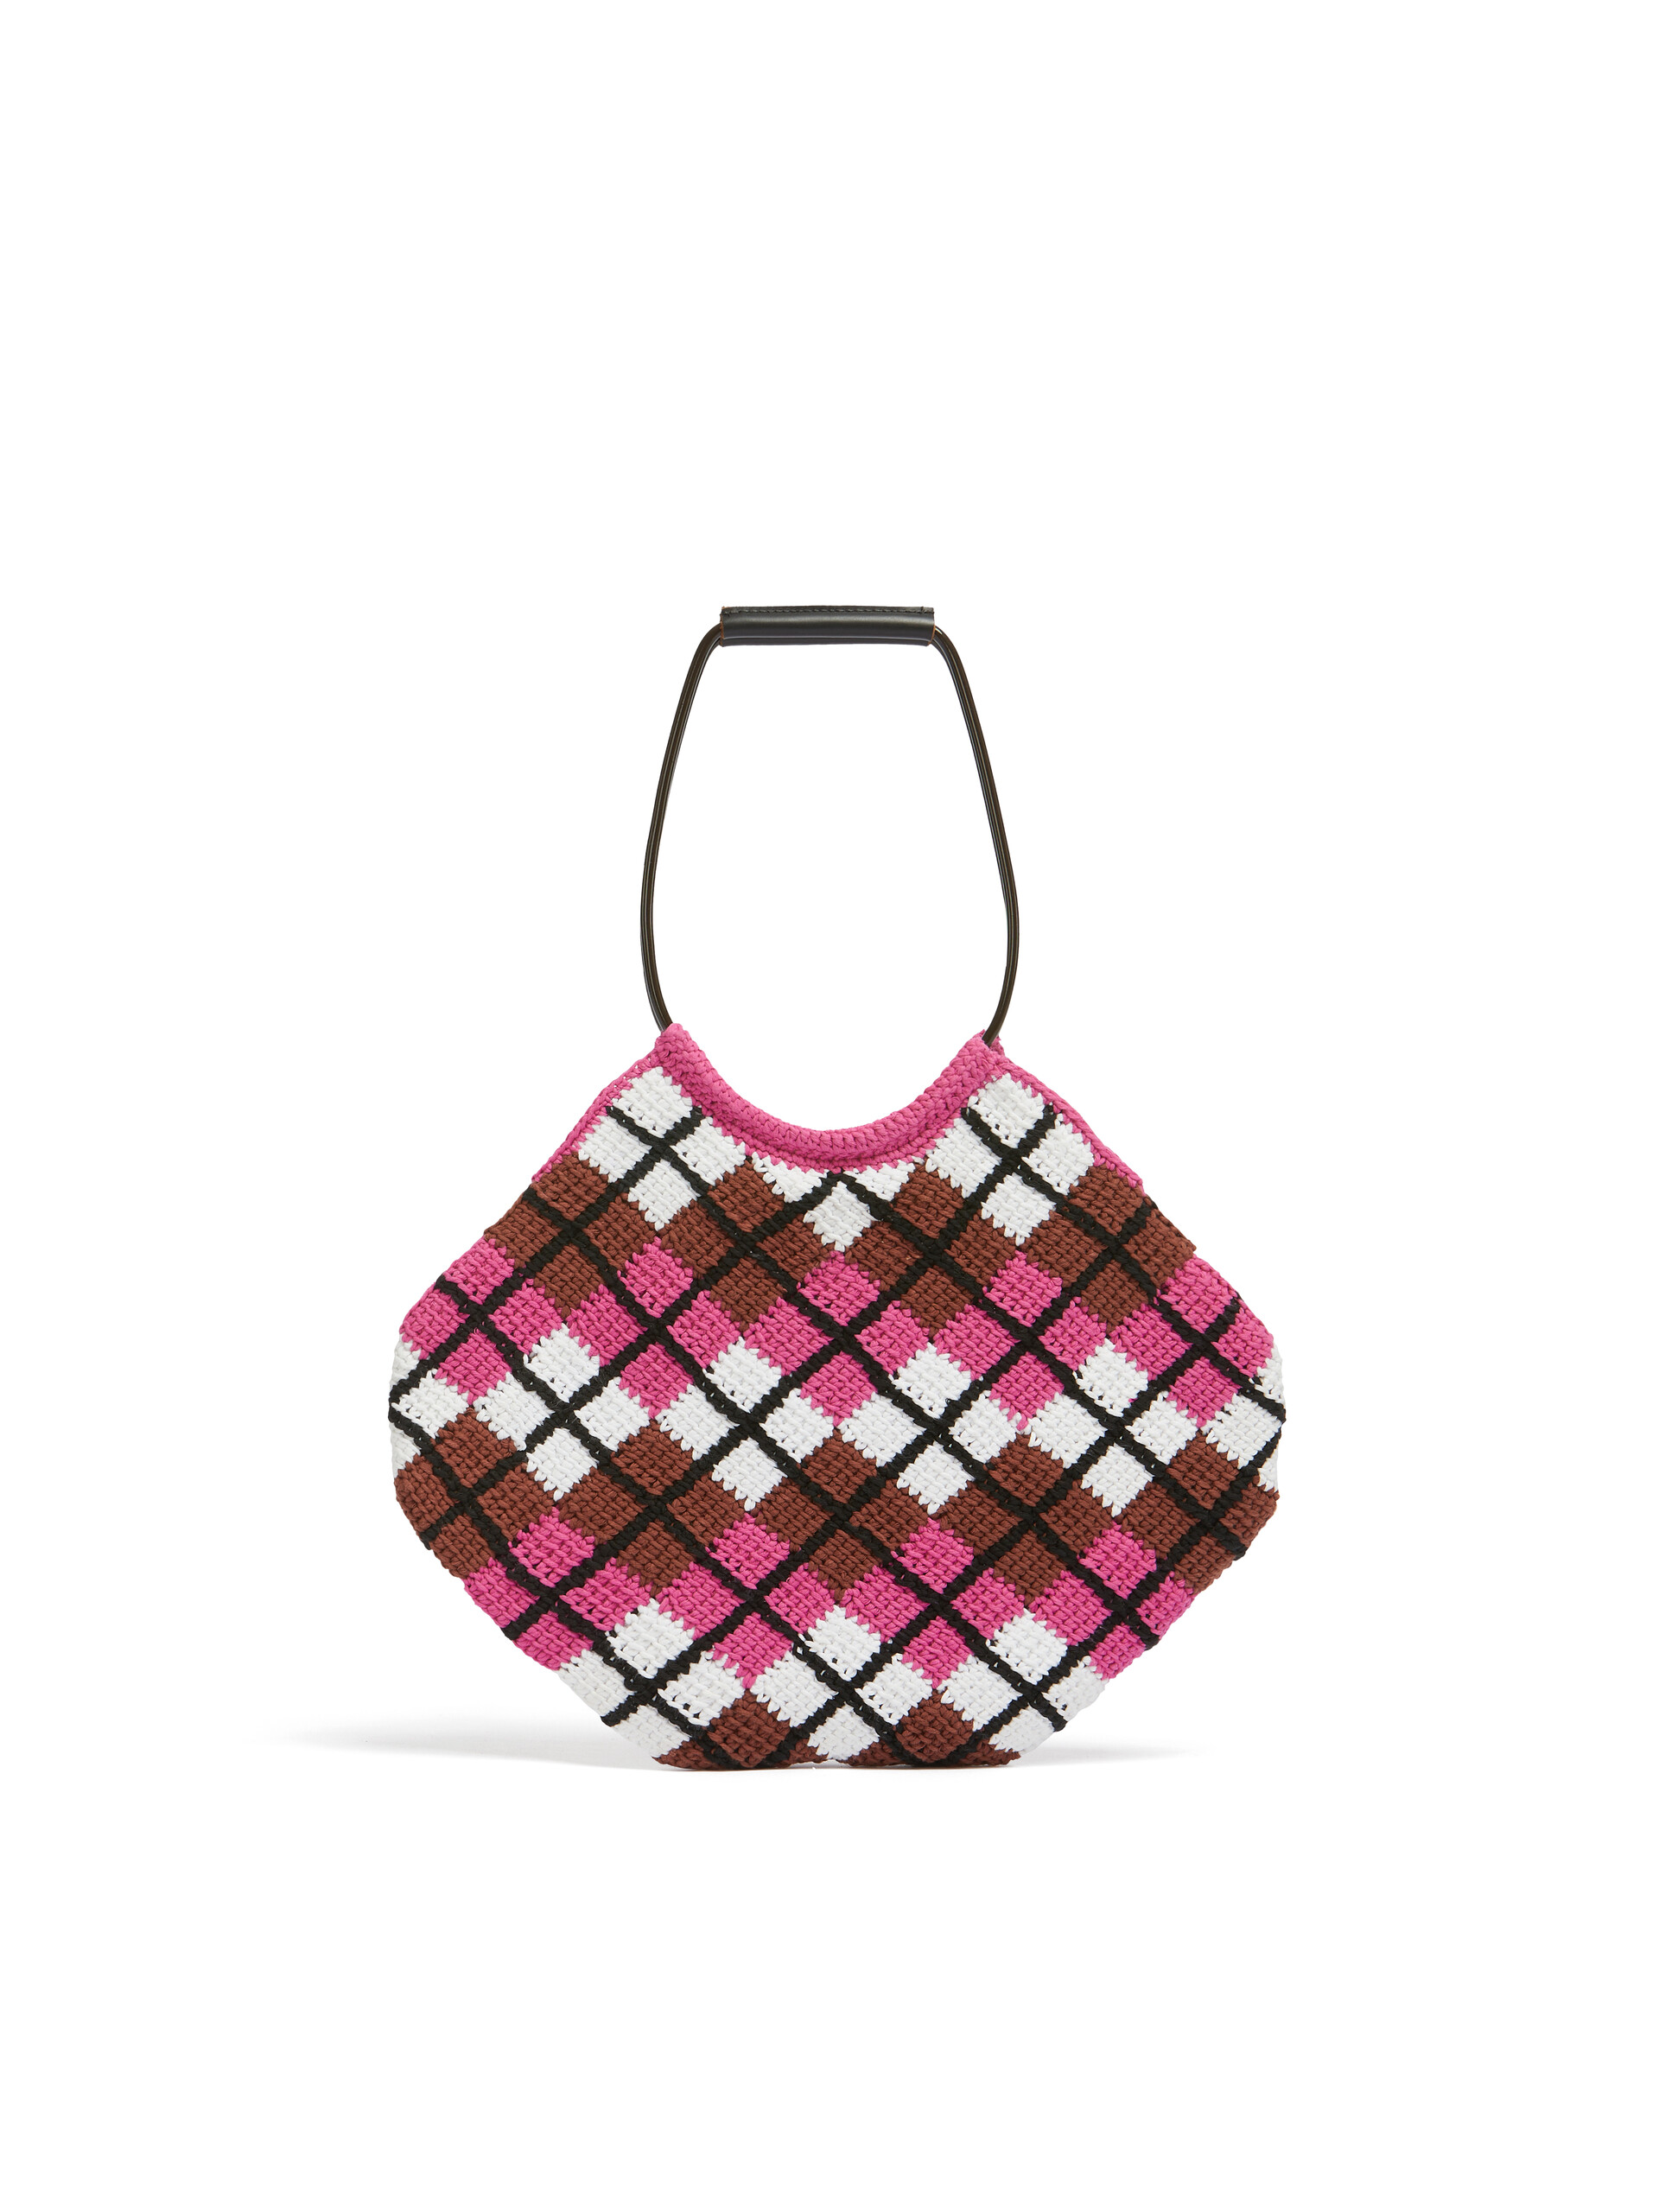 MARNI MARKET Handtasche mit Rautenmuster aus Baumwolle in Rosa - Shopper - Image 3